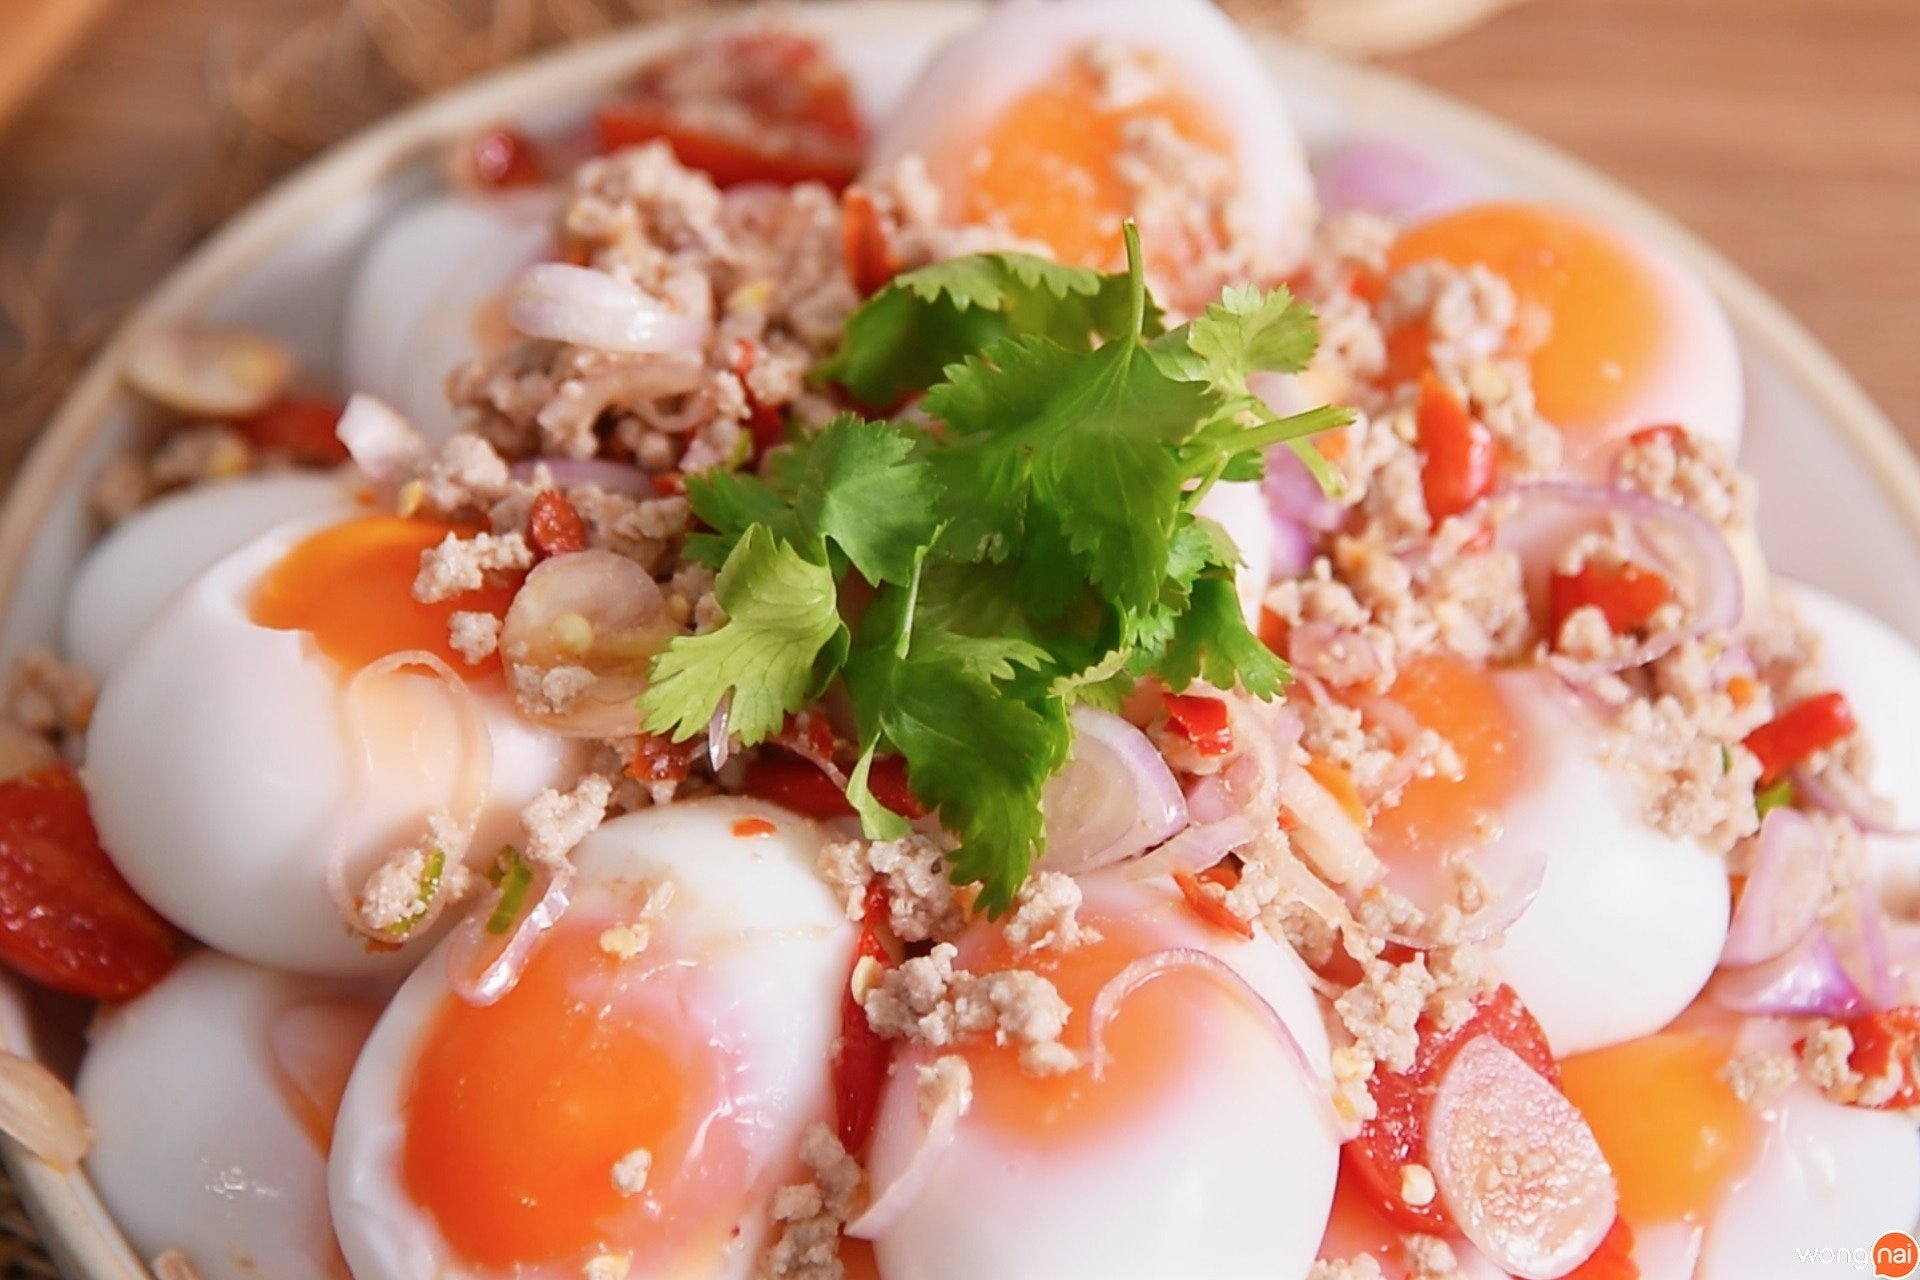 10 สูตร “เมนูไข่ต้ม” สุดแสนจะง่าย มือใหม่หัดเข้าครัวทำได้แน่นอน!